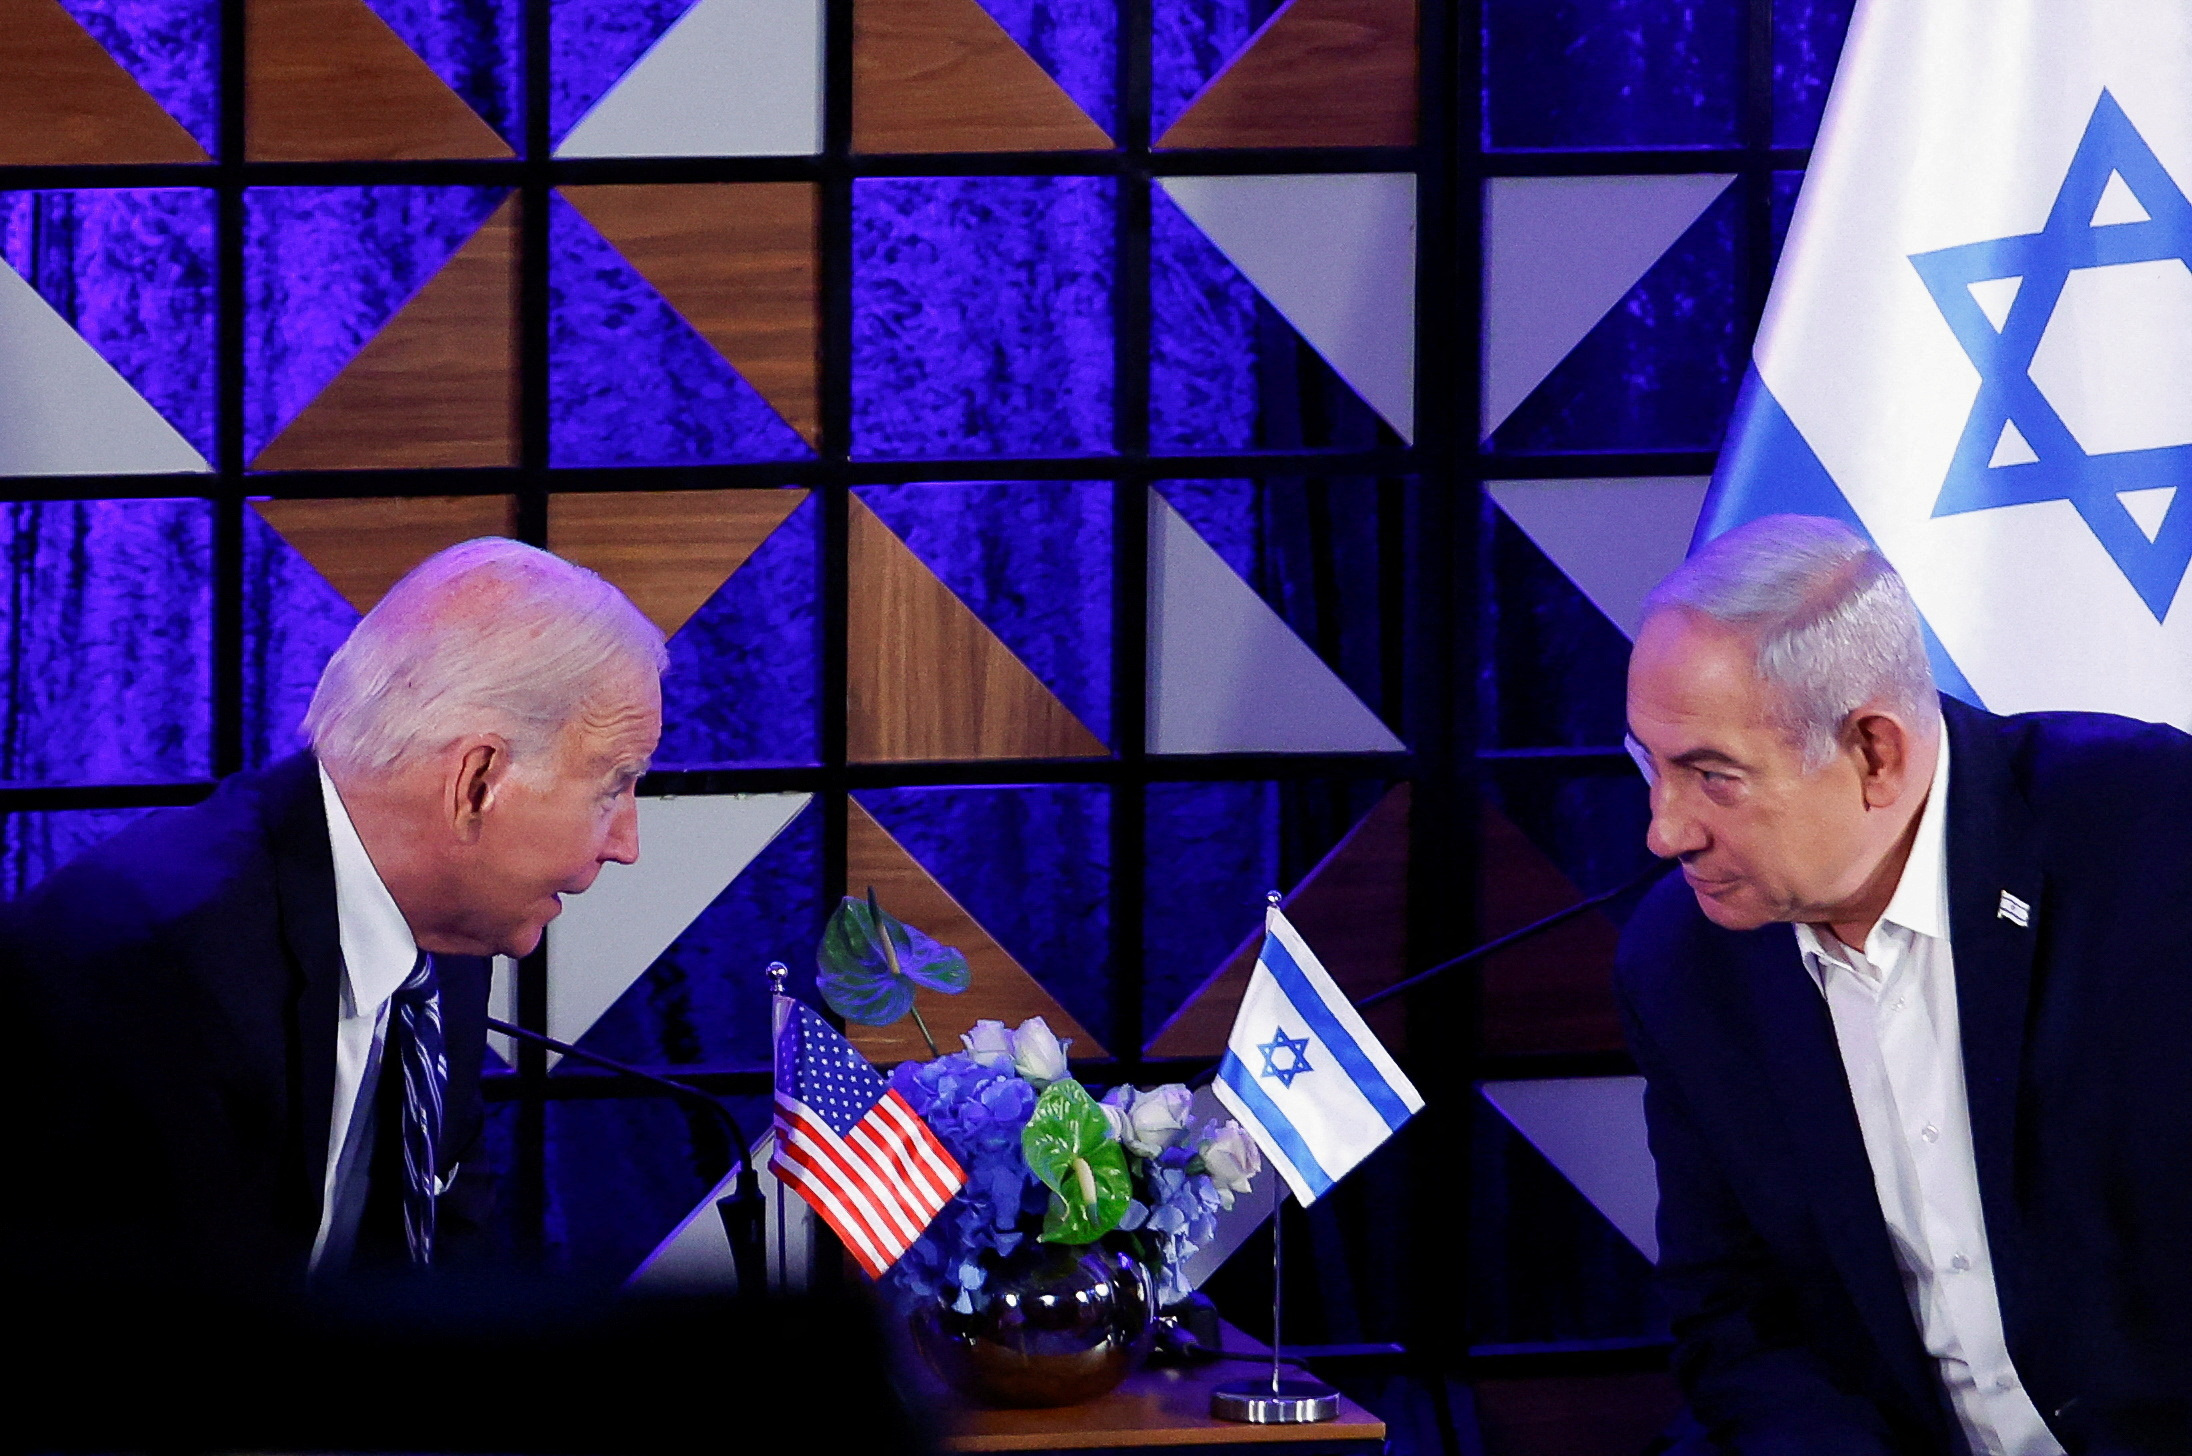  바이든 미국 대통령이 현지 시간 18일 이스라엘을 방문한 모습 (사진 출처: EPA)